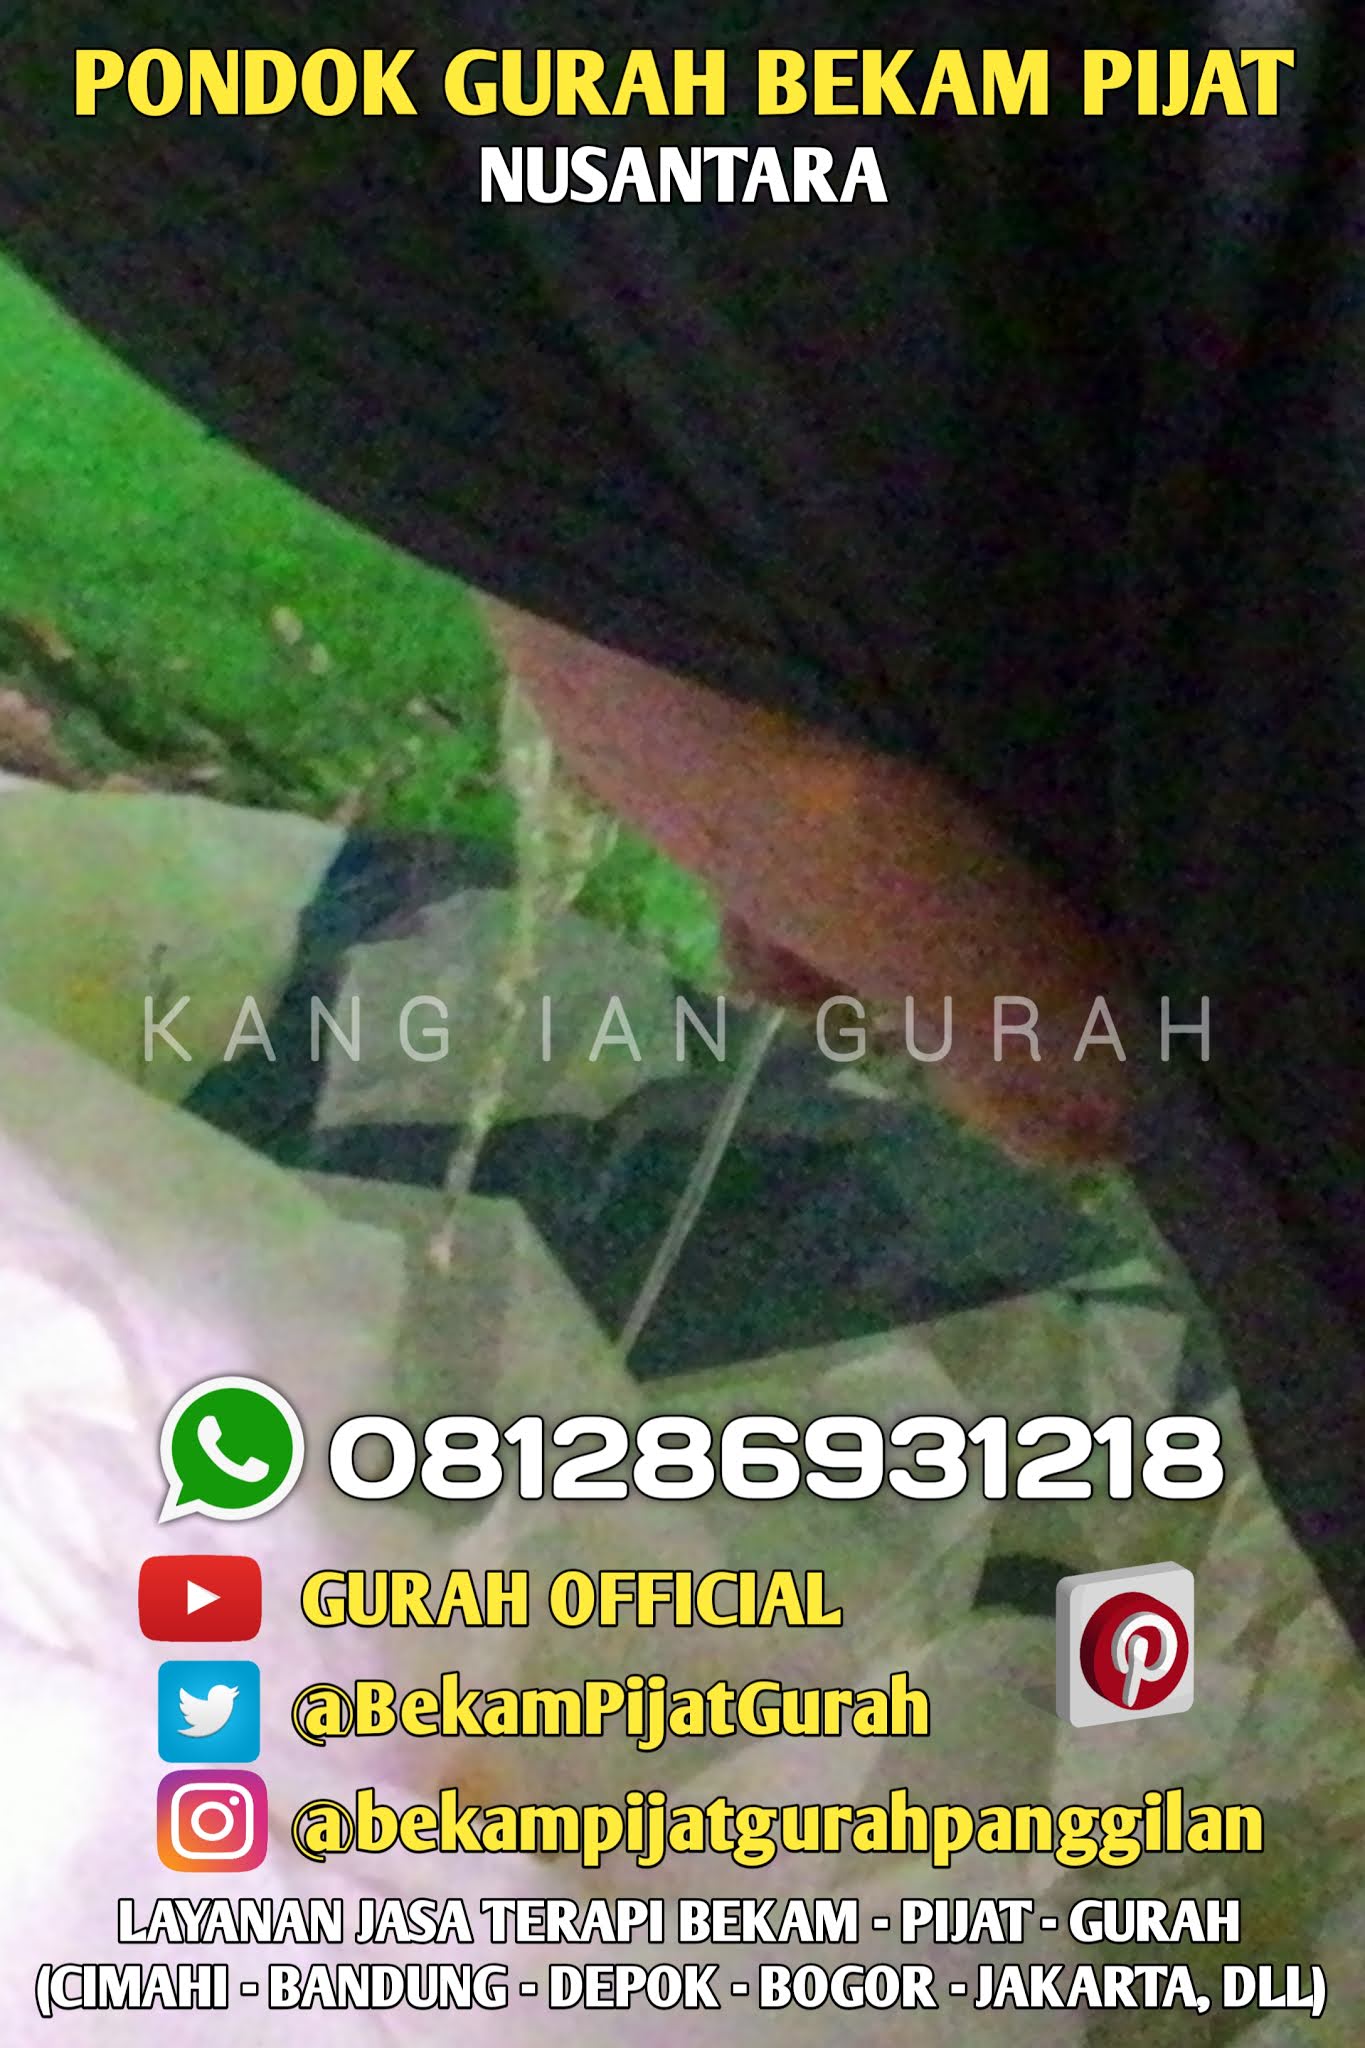 Kang Ian Gurah Bandung